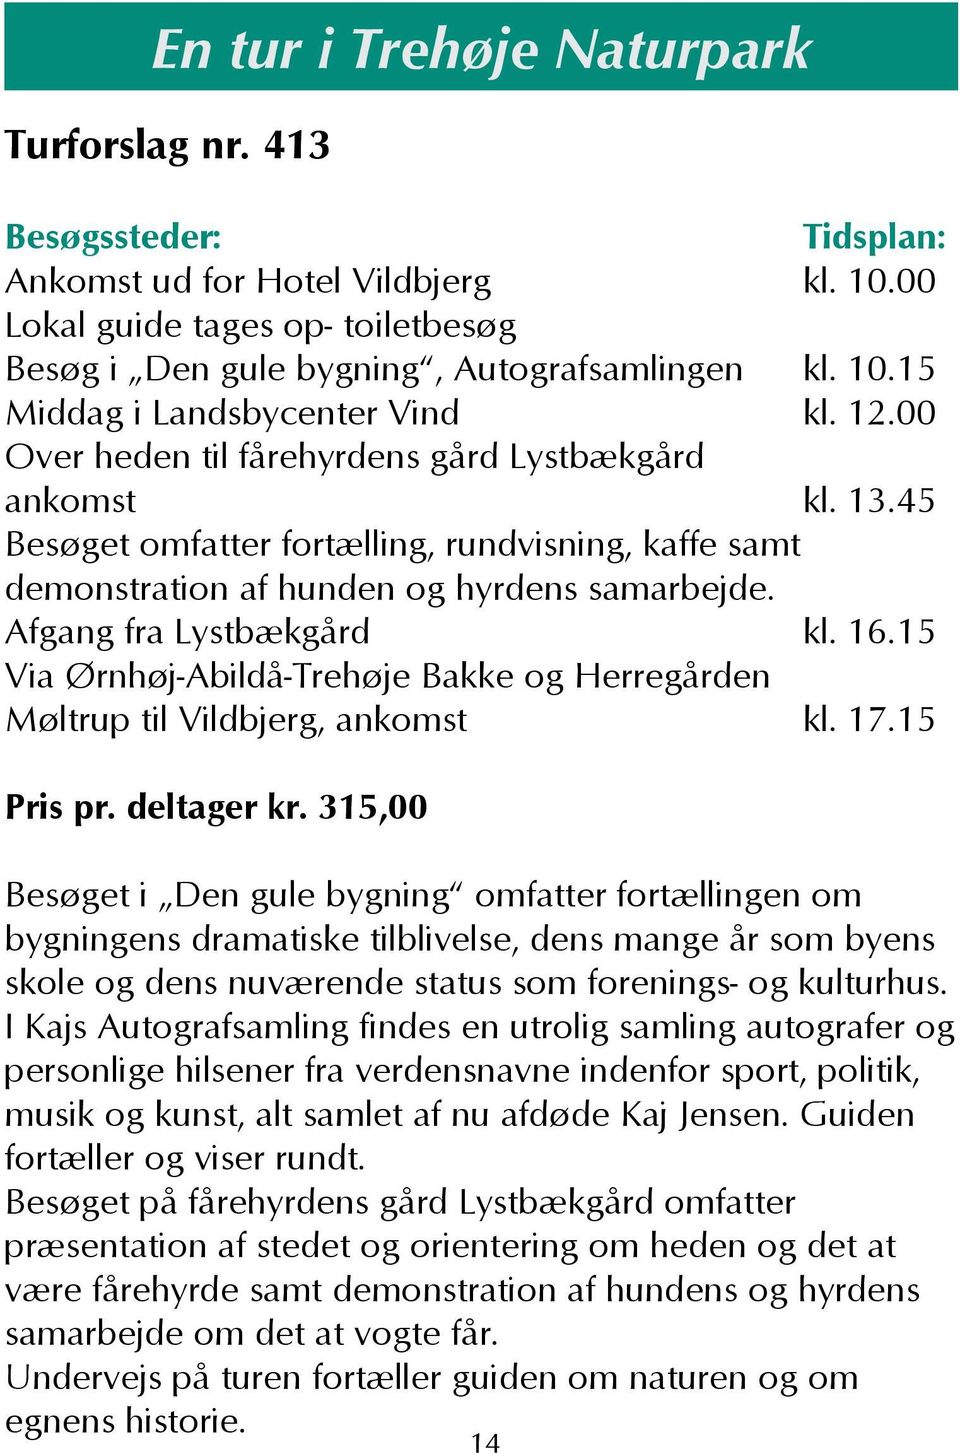 15 Via Ørnhøj-Abildå-Trehøje Bakke og Herregården Møltrup til Vildbjerg, ankomst kl. 17.15 Pris pr. deltager kr.